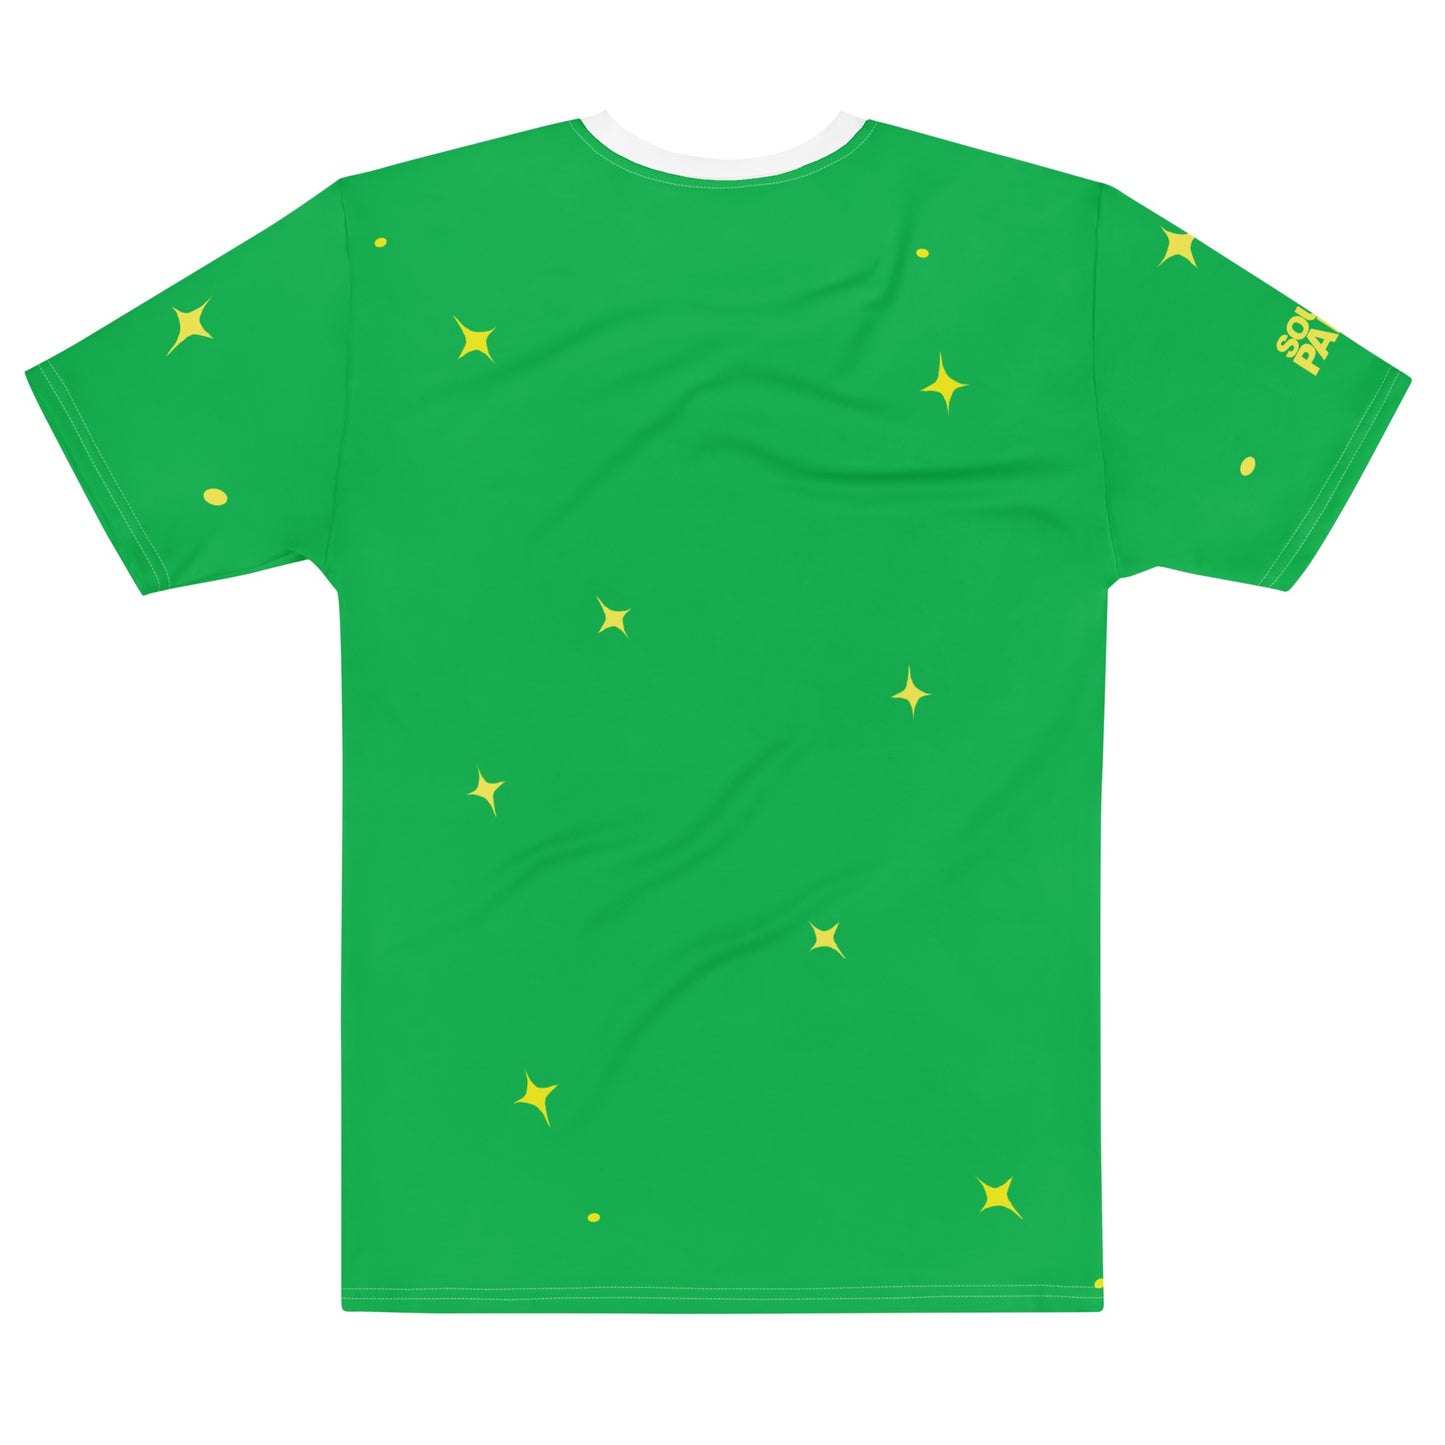 South Park T-Shirt Irish Randy